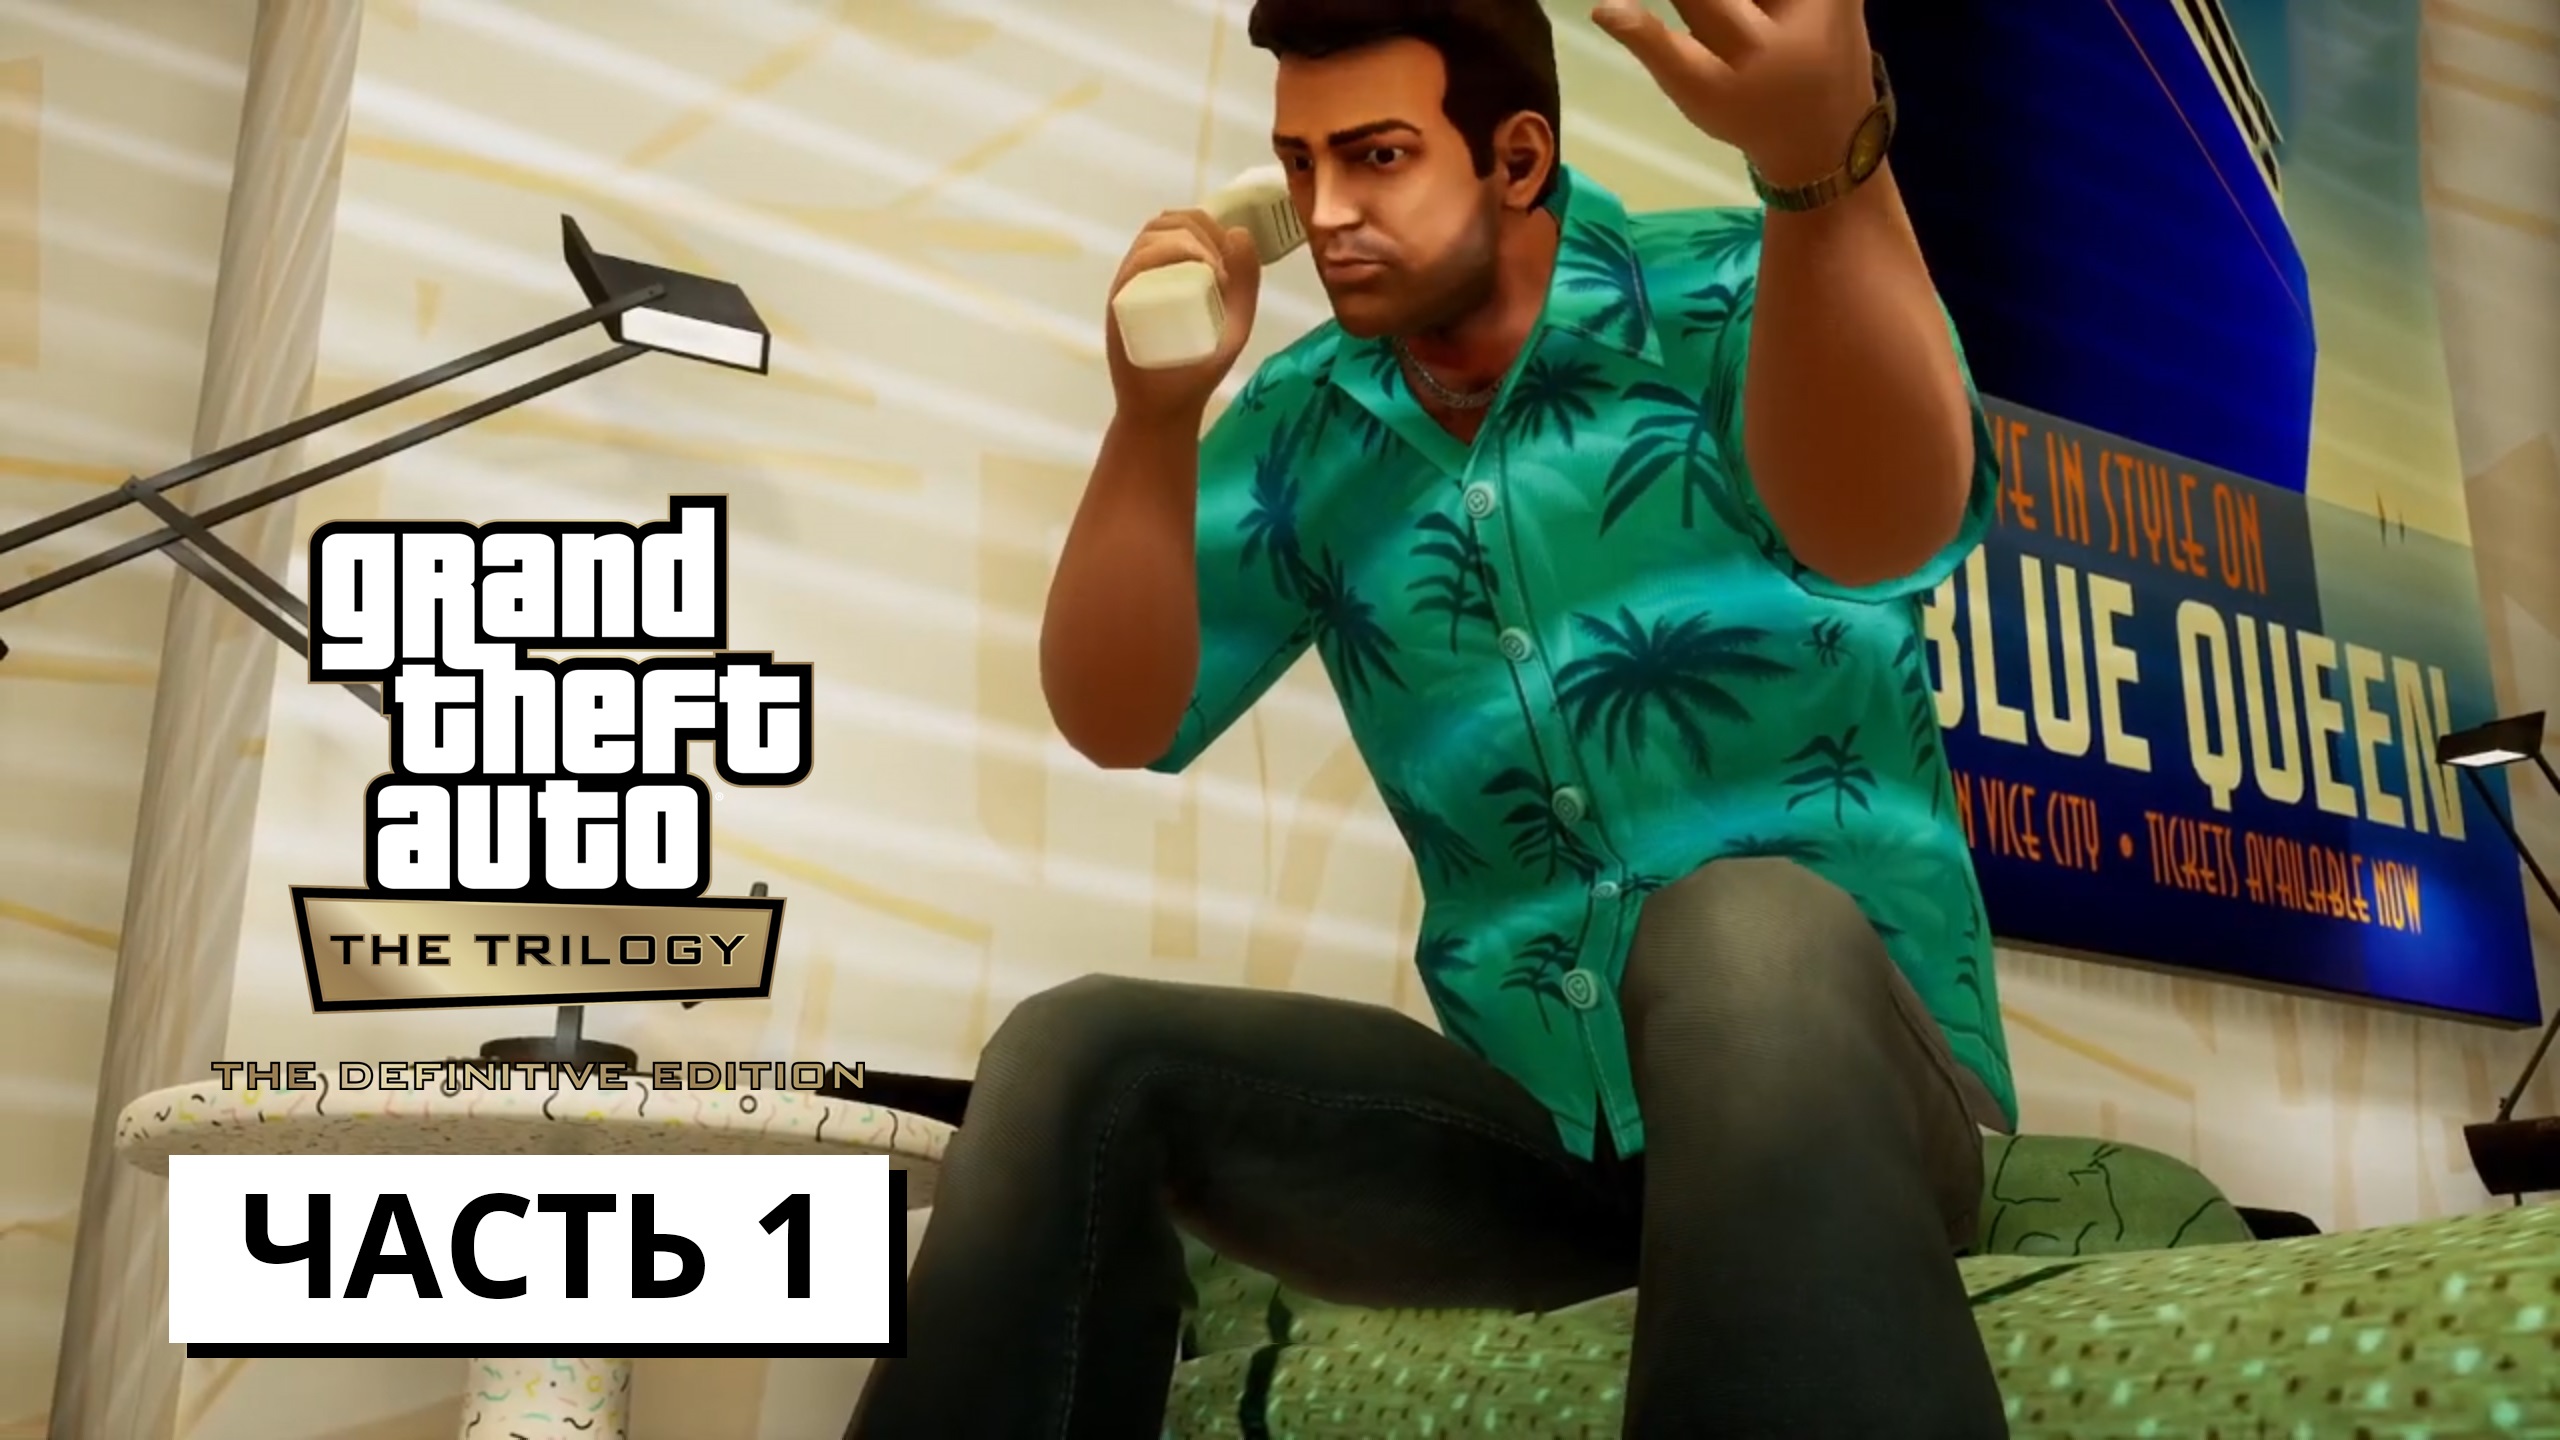 Grand Theft Auto: Vice City - The Definitive Edition ► Прохождение # 1 (без коментариев)